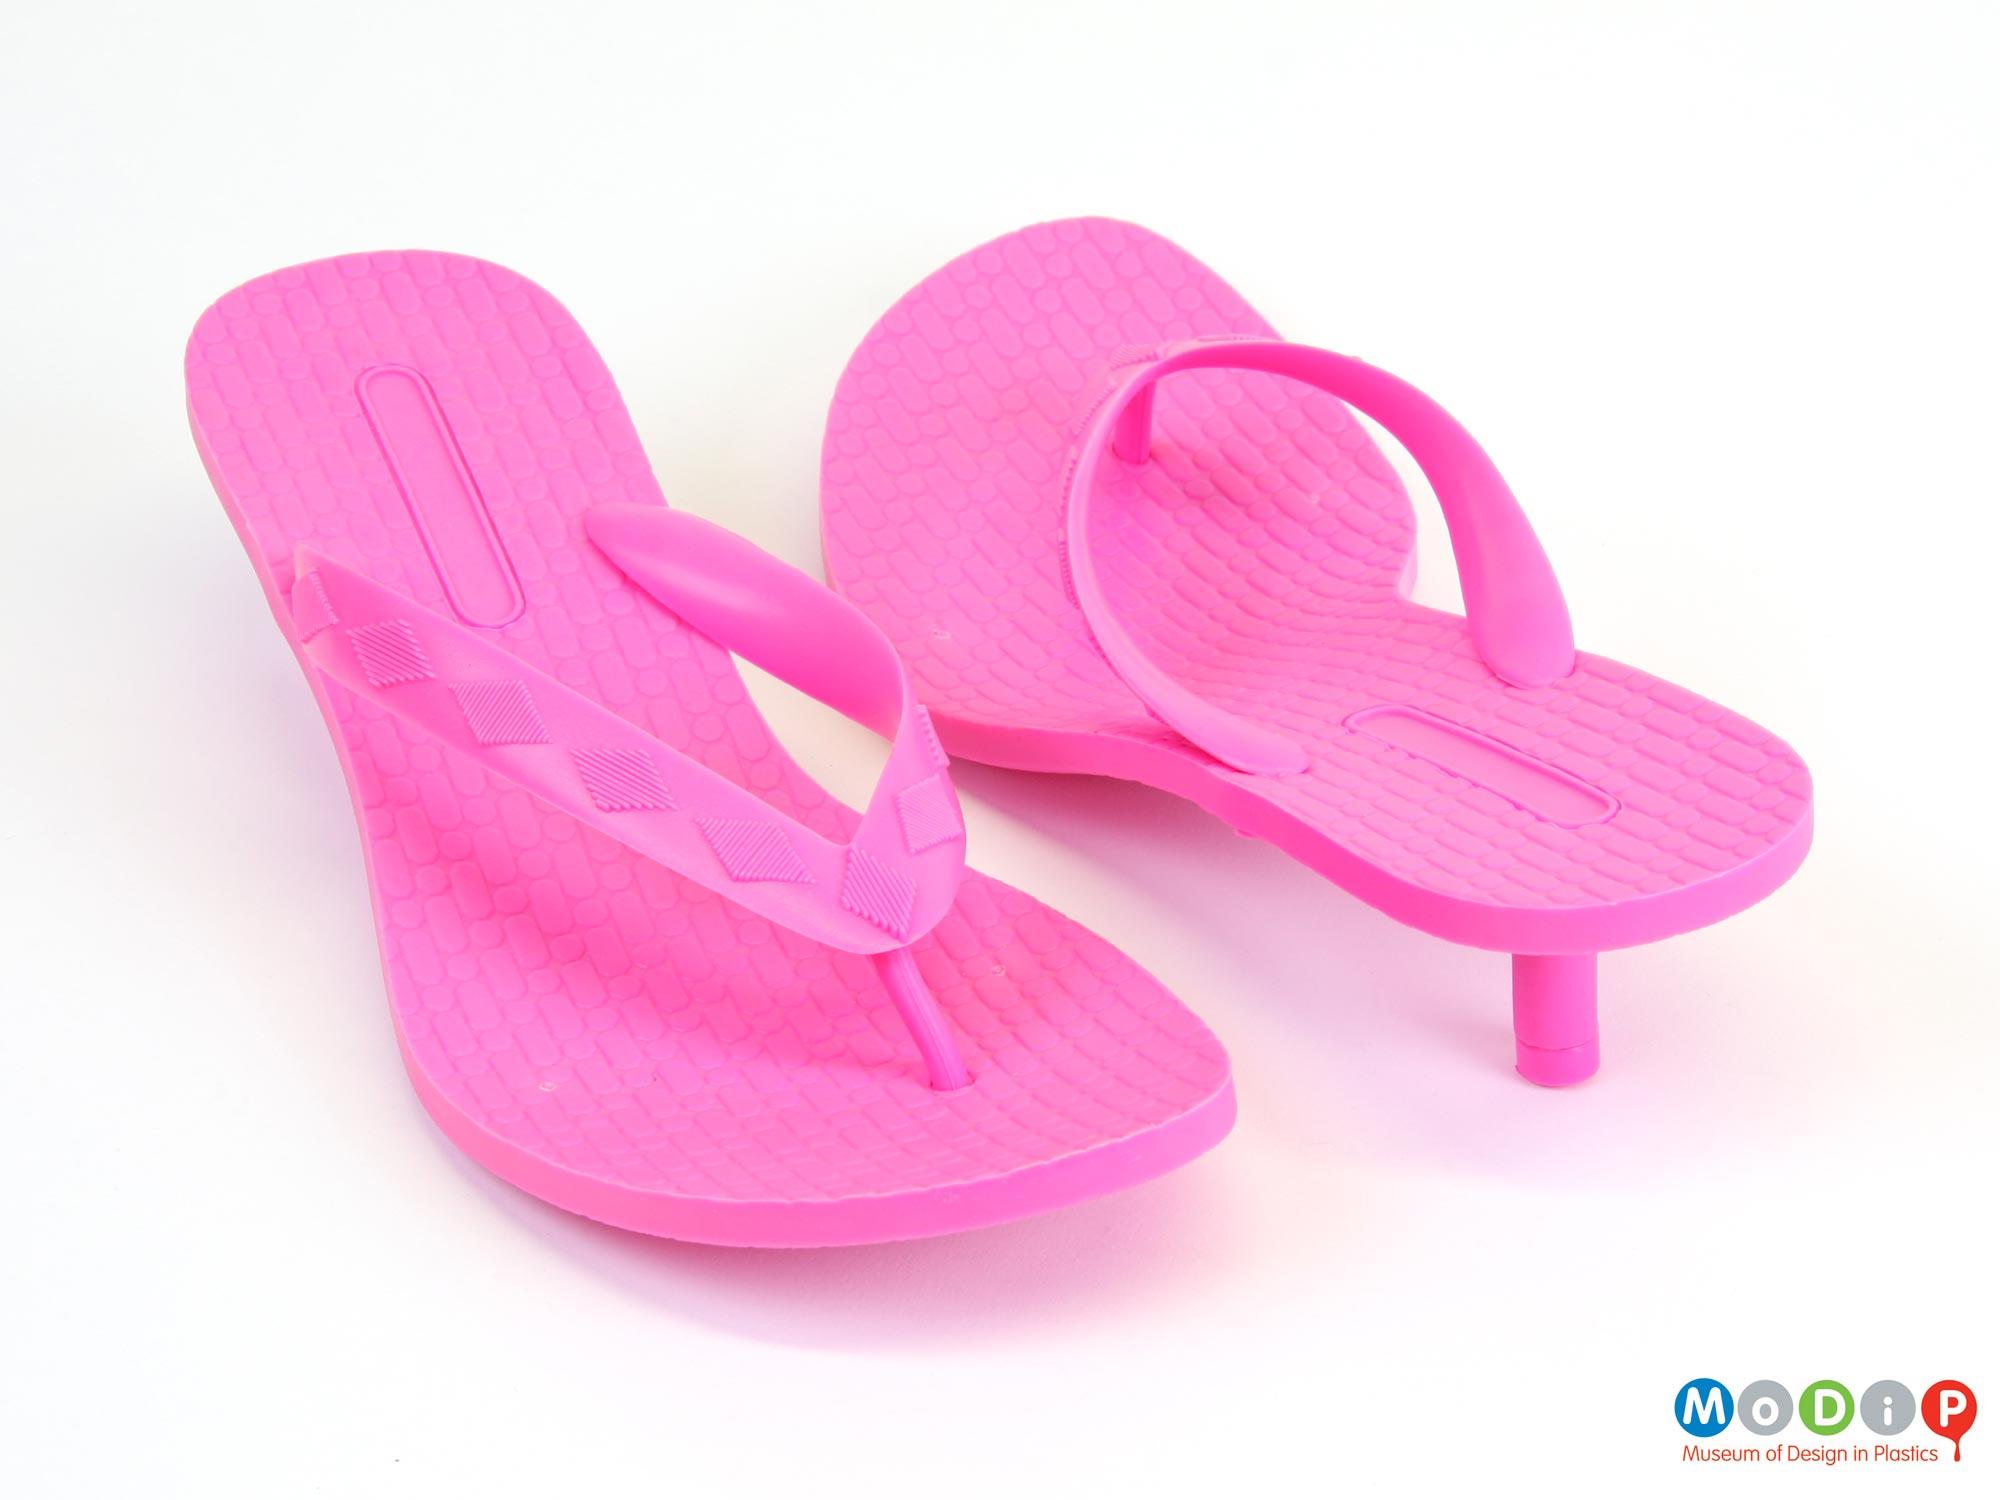 Bright pink flip flops with kitten heel | Museum of Design in Plastics